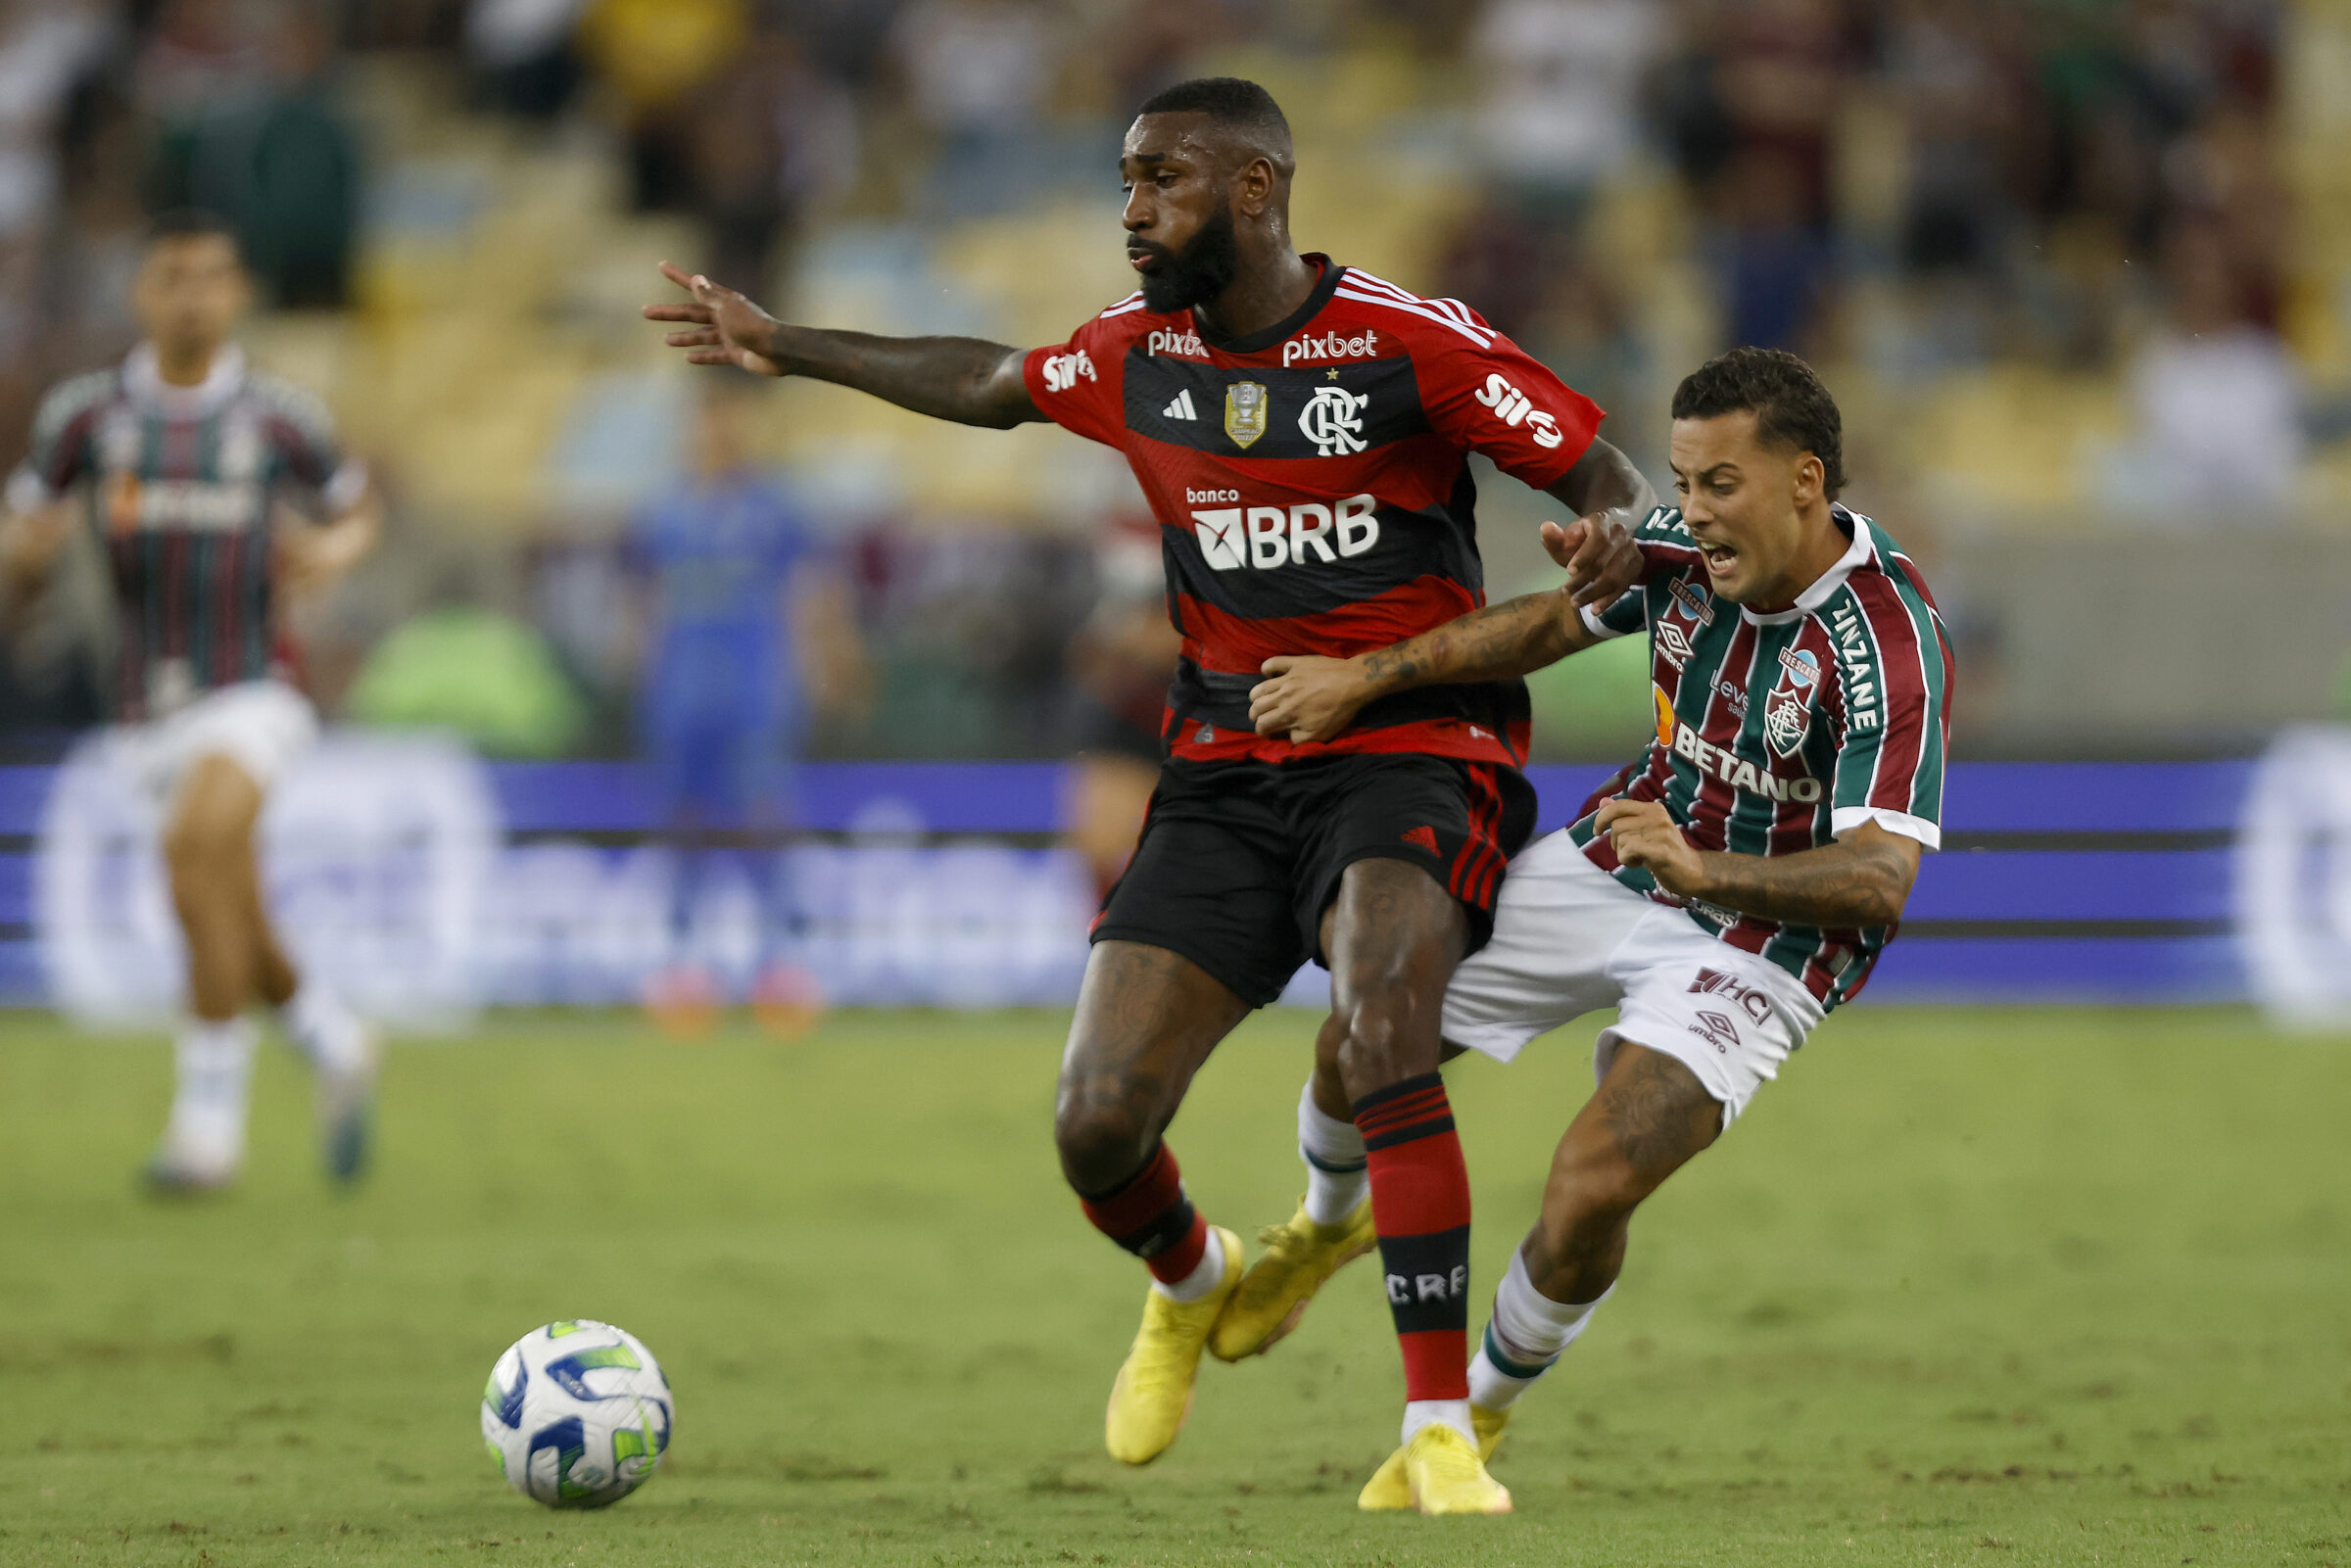 Campeonato Brasileiro  Flamengo x Fluminense - PRÉ E PÓS-JOGO EXCLUSIVO  FLATV 